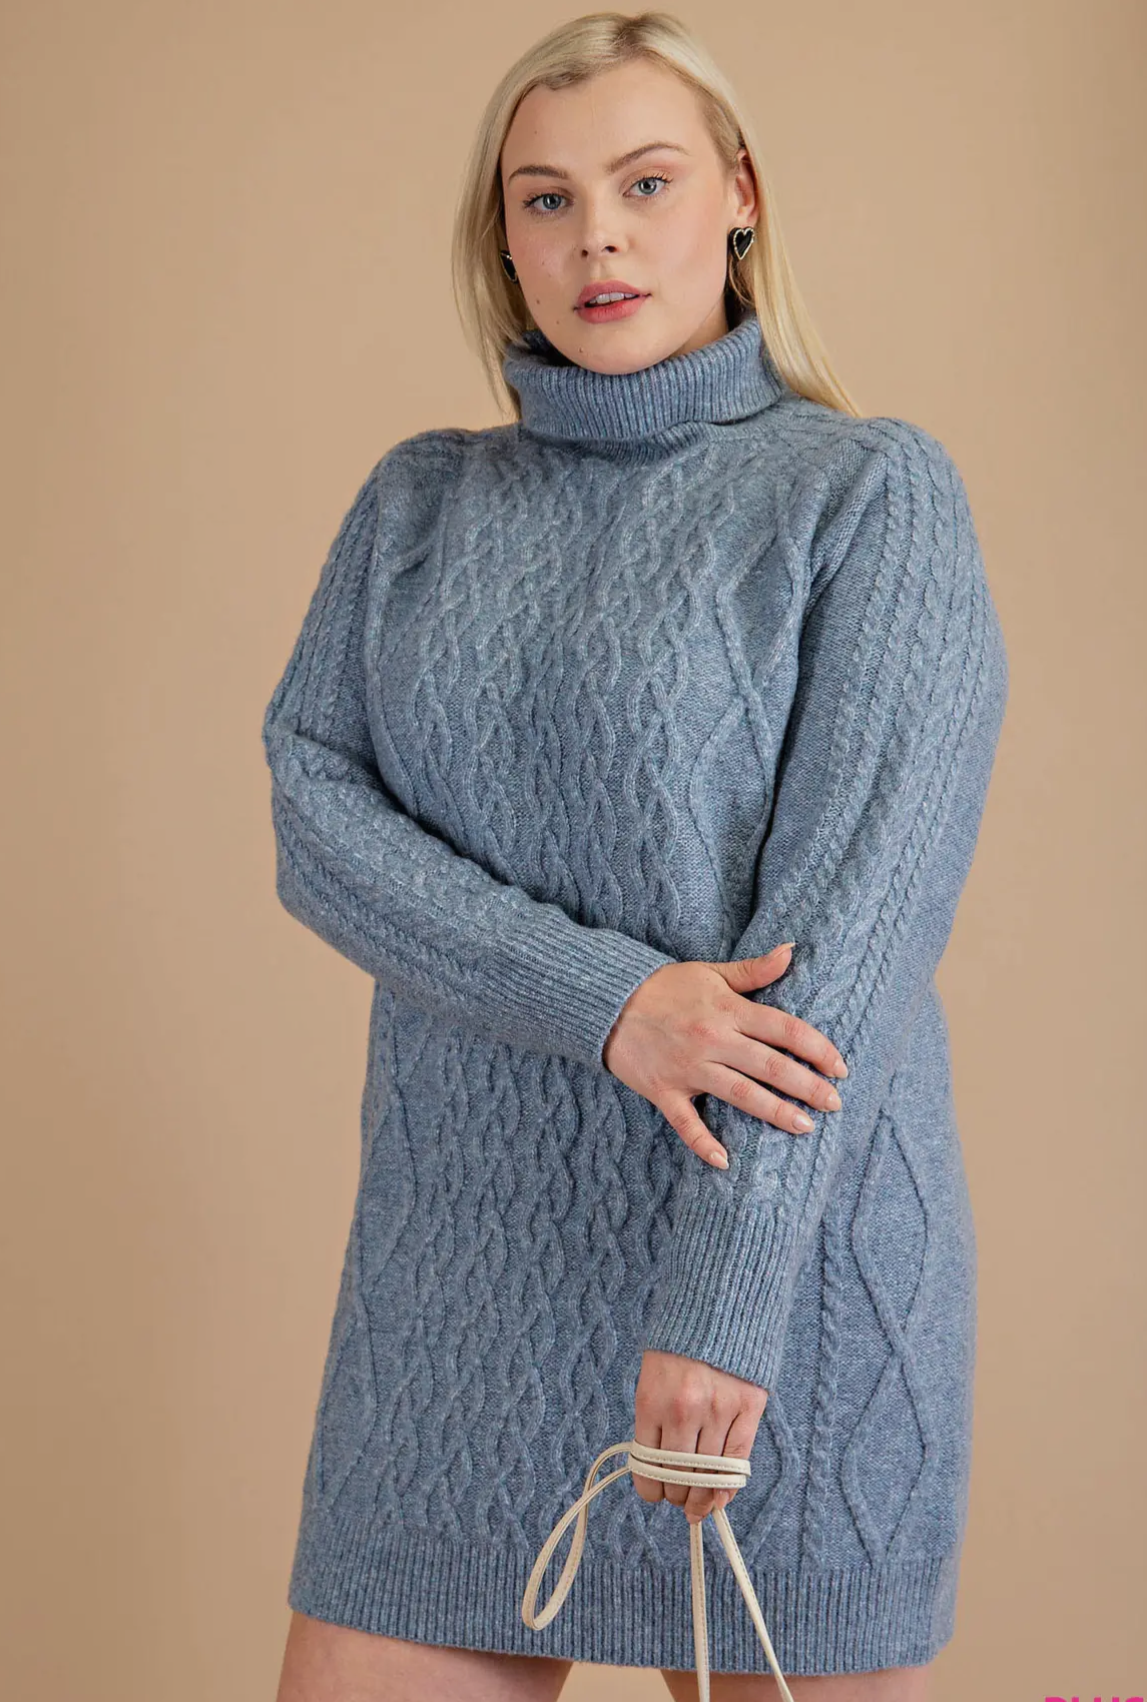 Curvy Blue Knit Sweater Dress *ALL SALES FINAL*